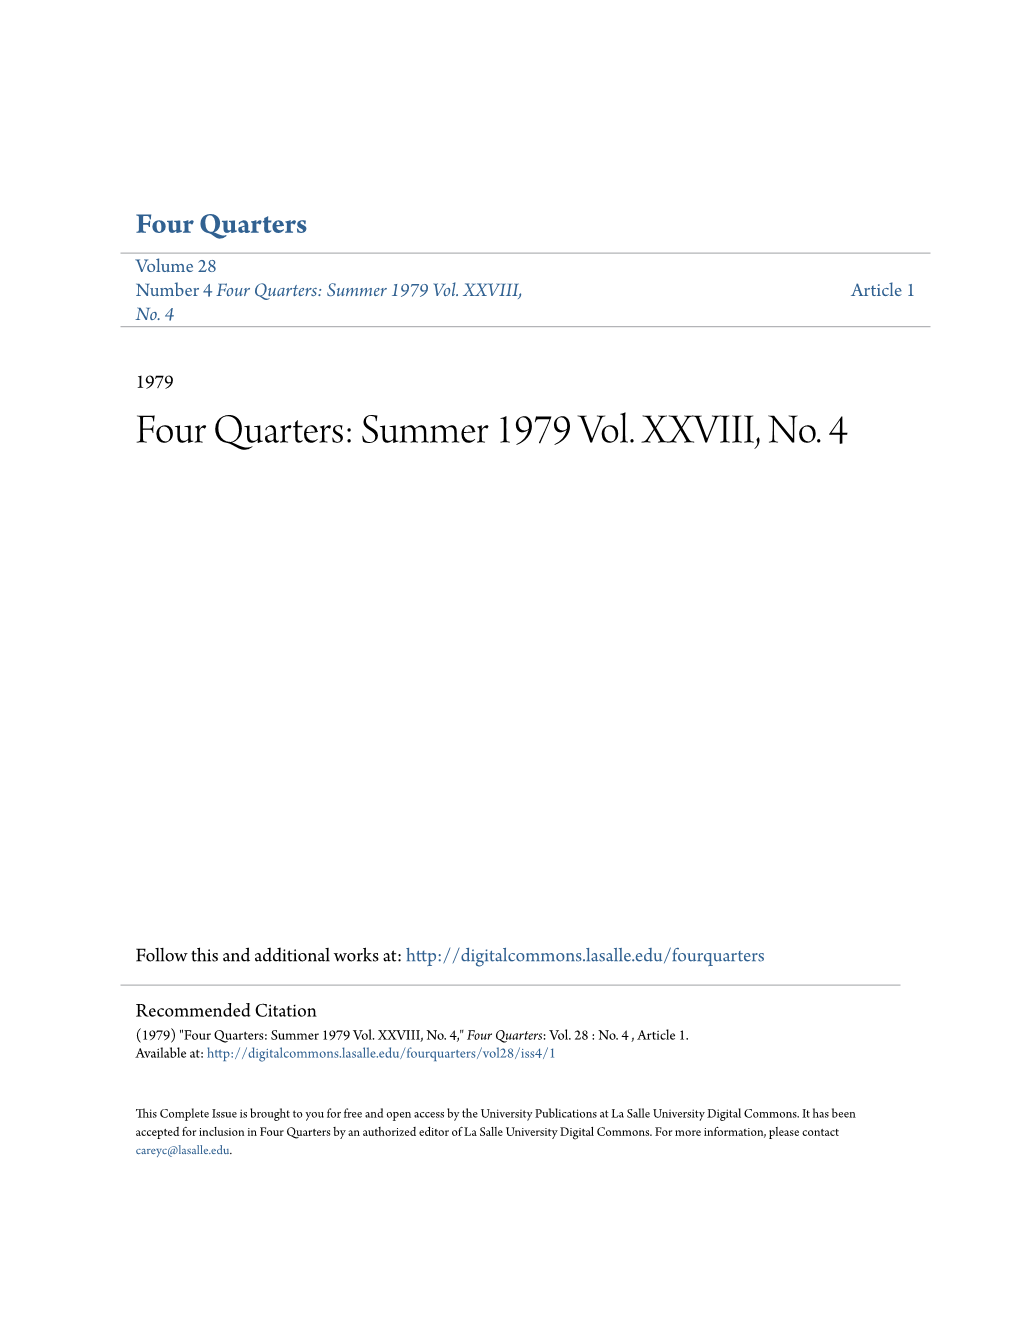 Four Quarters: Summer 1979 Vol. XXVIII, No. 4